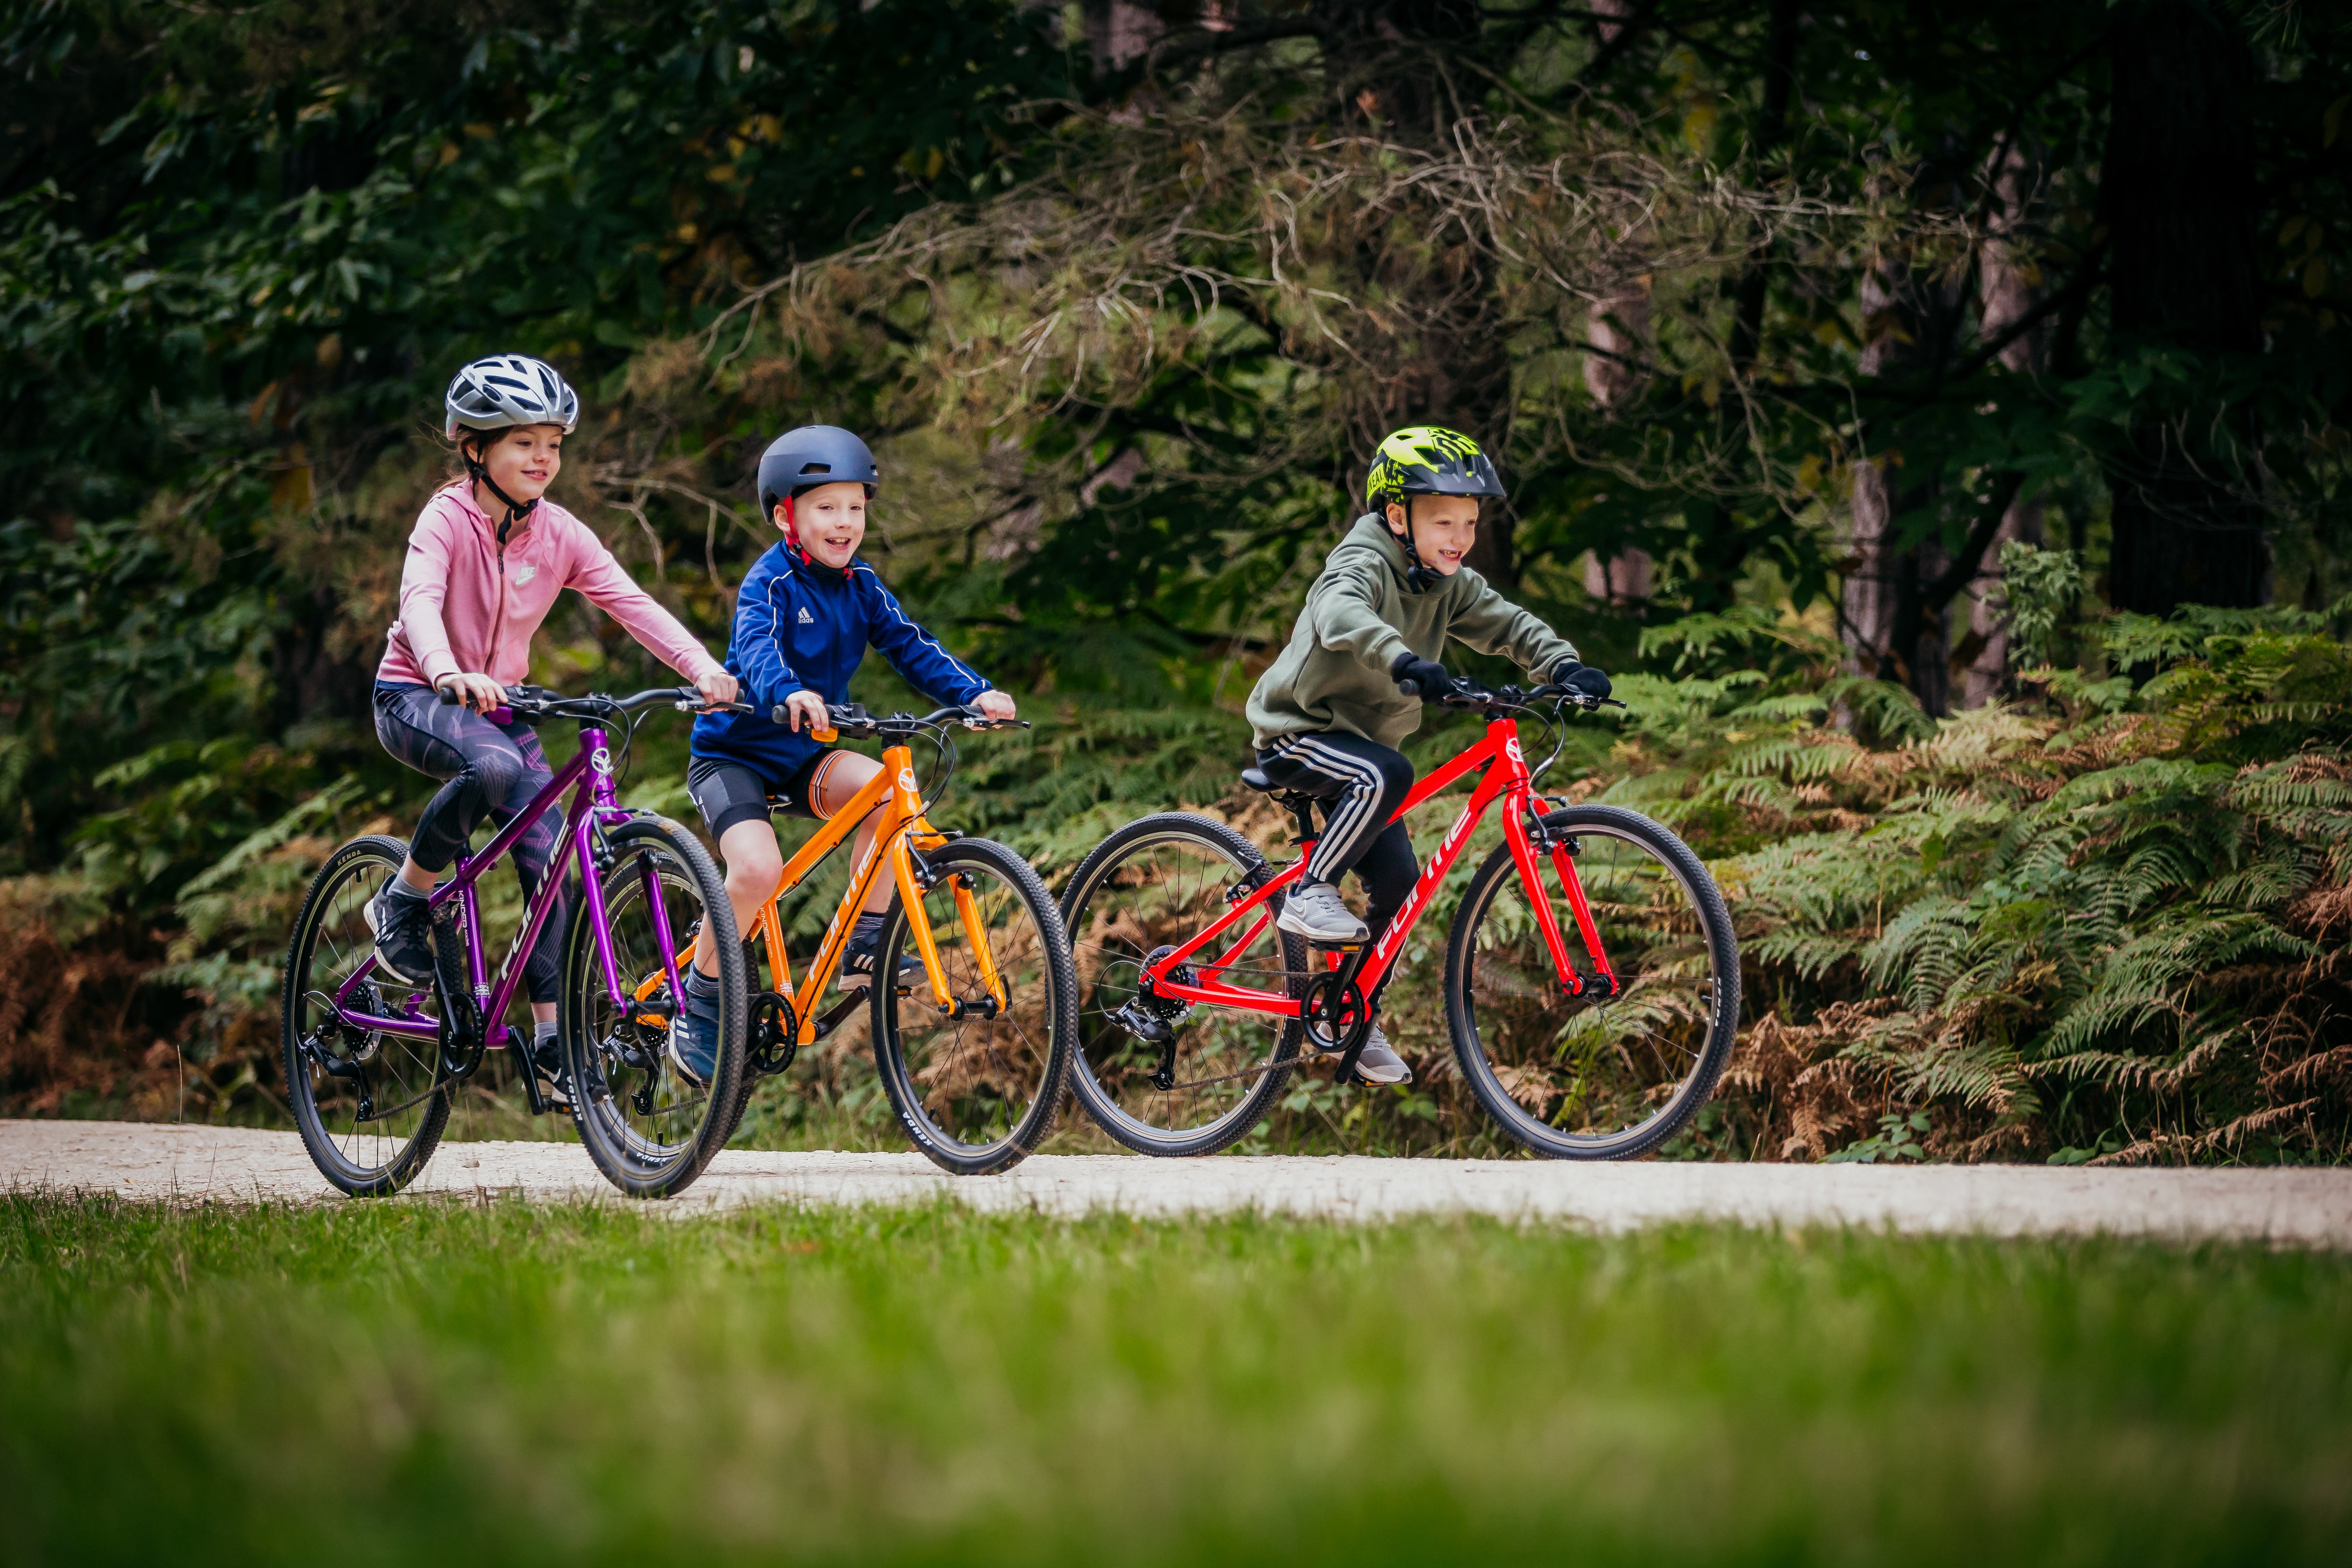 Kids on bikes in forest - bike club